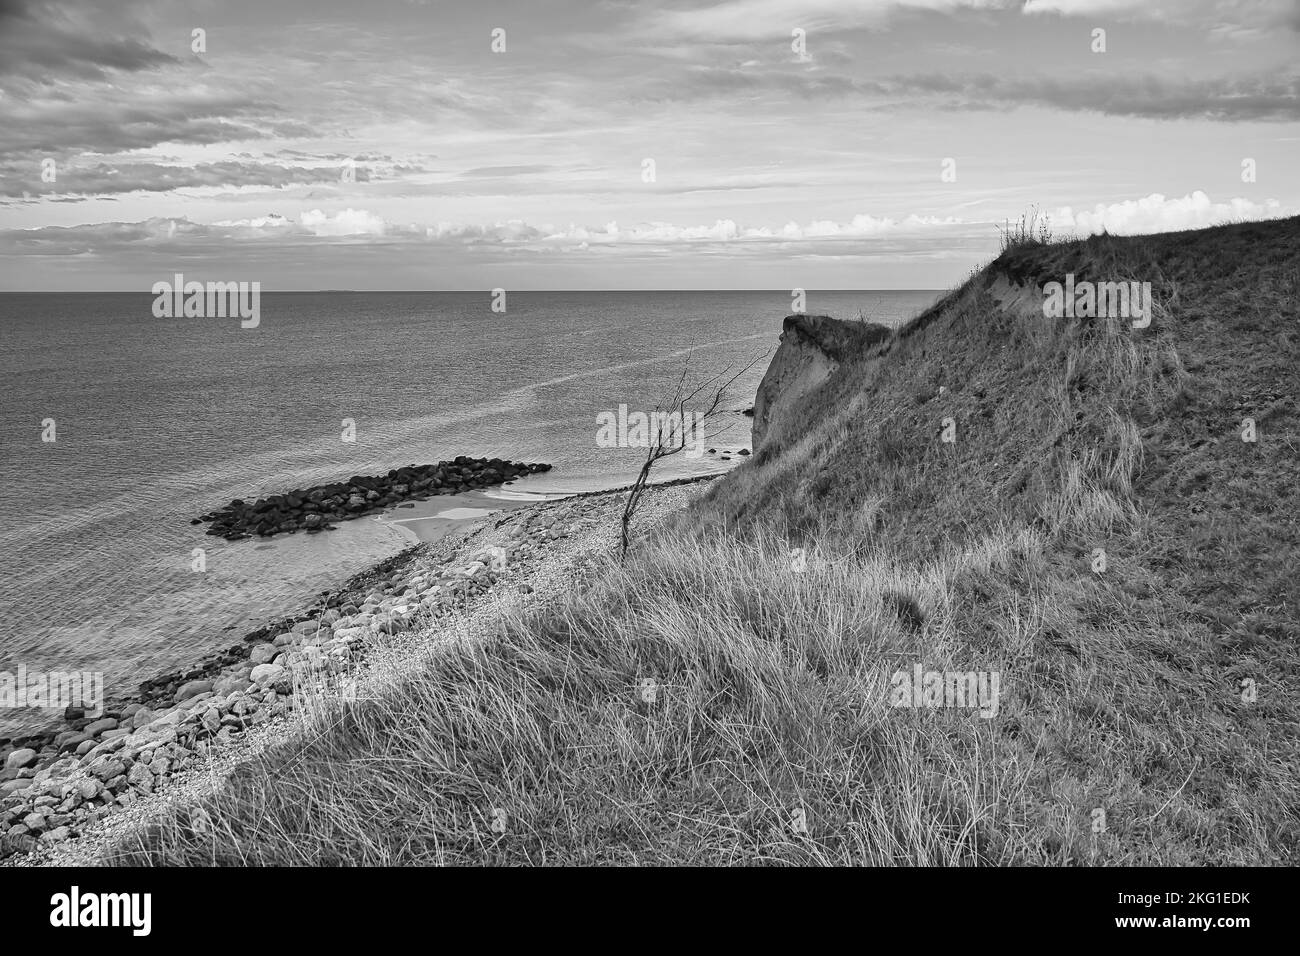 Hundested, Danemark sur la falaise surplombant la mer, prise en noir et blanc. Côte de la mer Baltique, prairie herbacée, plage. Nuages à l'horizon. Pho paysage Banque D'Images